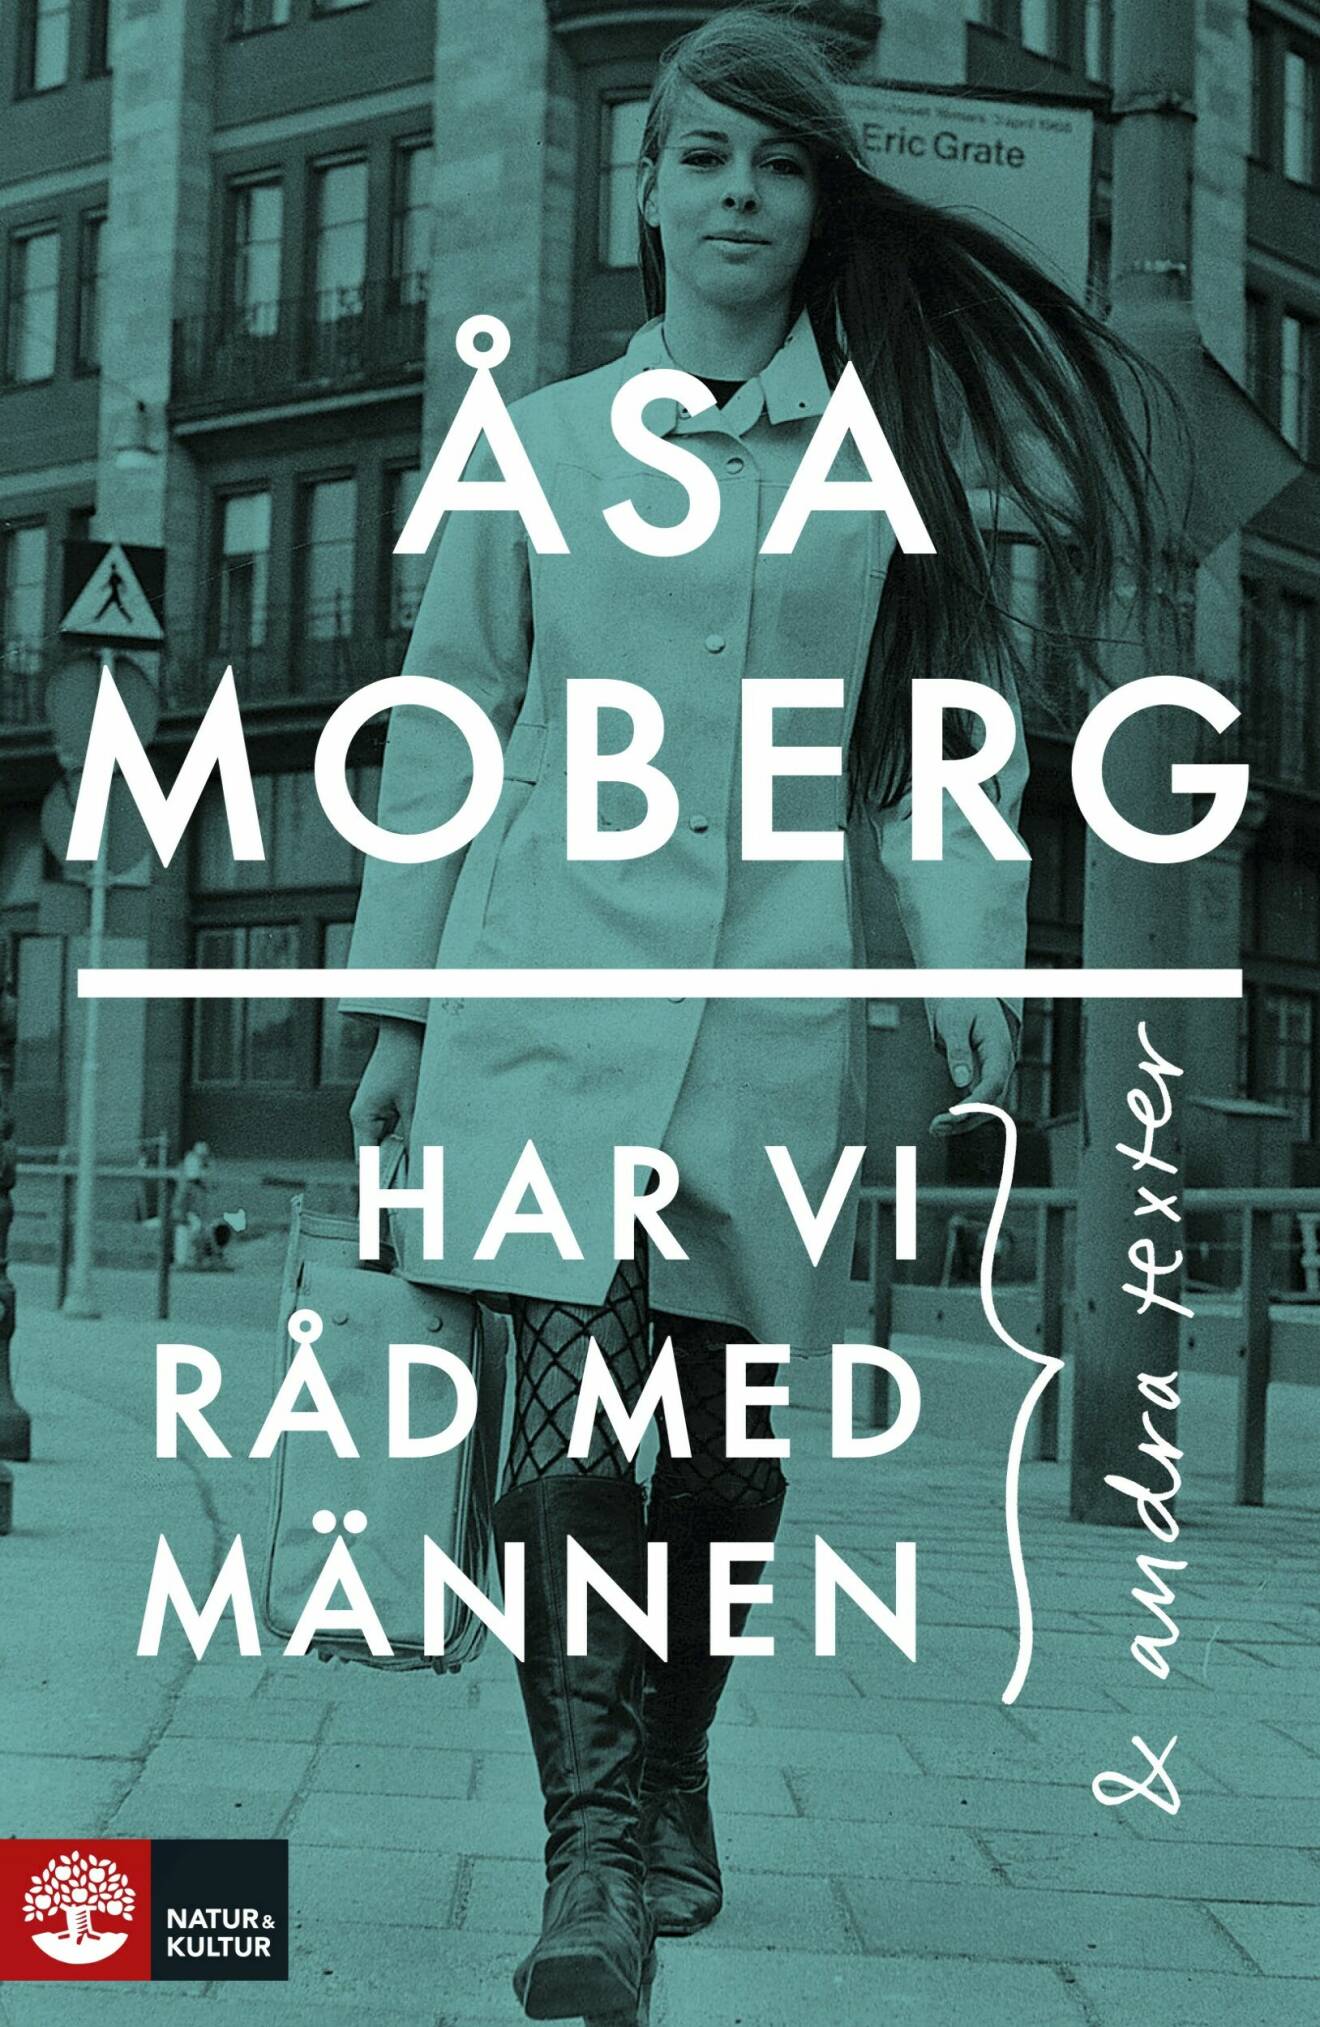 Har vi råd med männen? av Åsa Moberg.